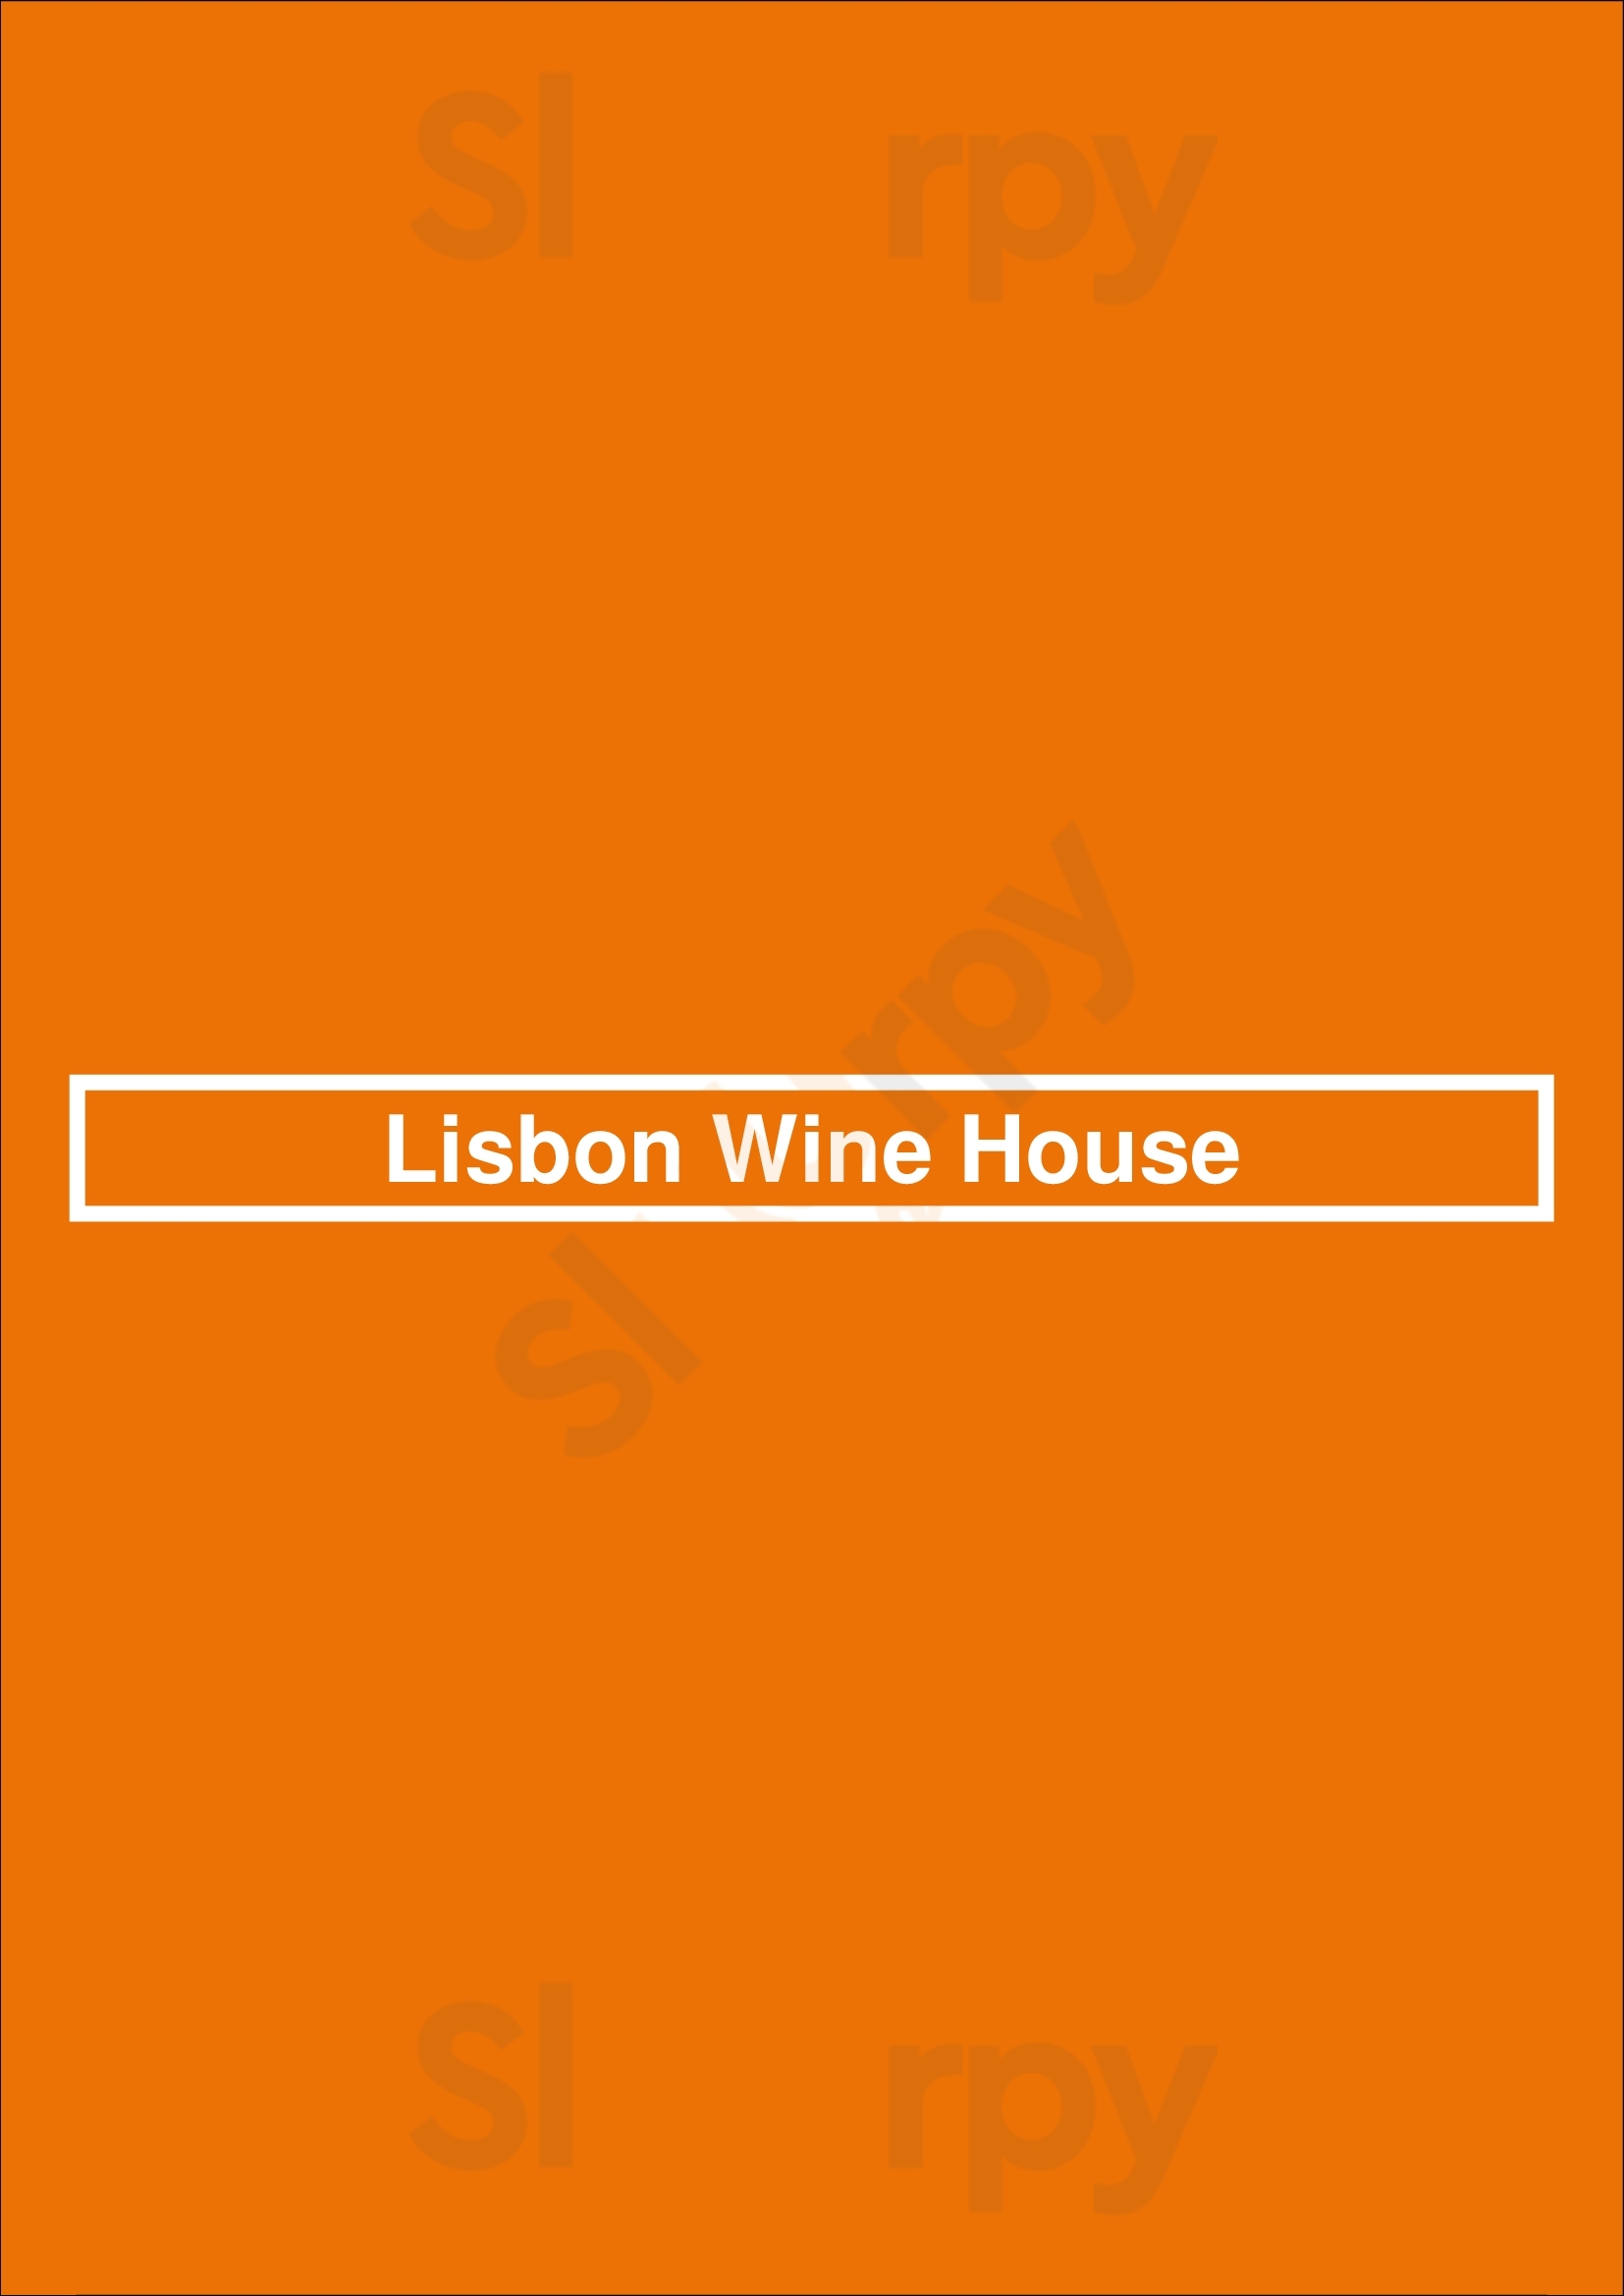 Lisbon Wine House Lisboa Menu - 1